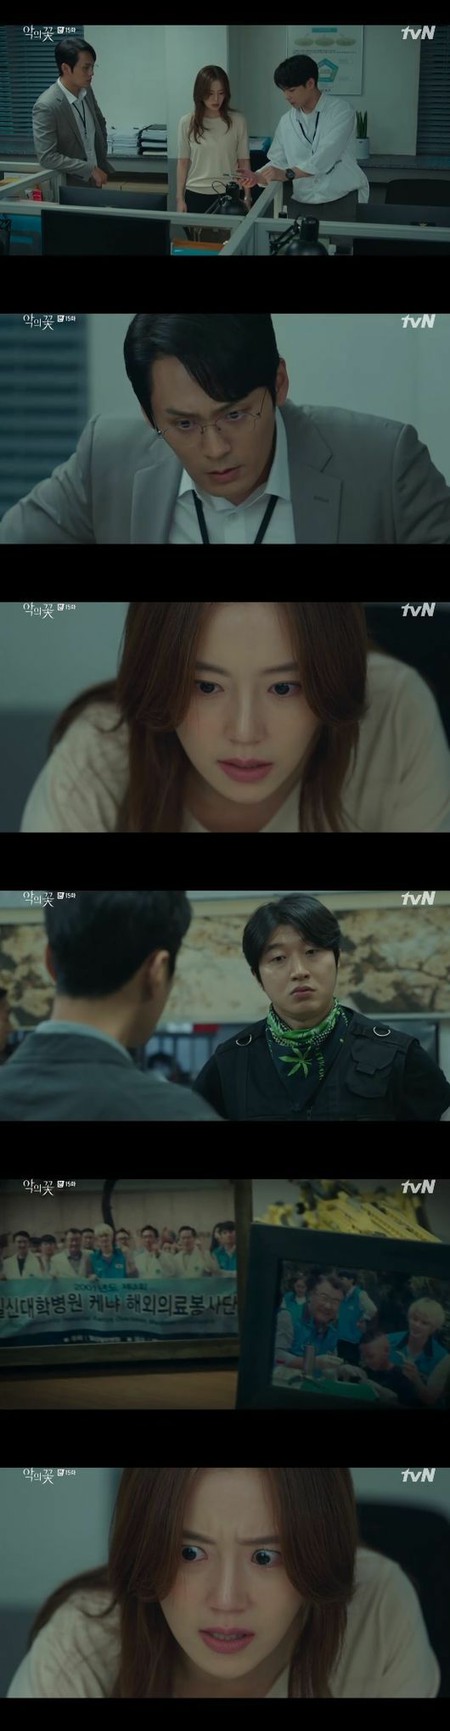 ≪韓国ドラマNOW≫「悪の花」15話、ムン・チェウォン、キム・ジフンが目覚めて驚愕